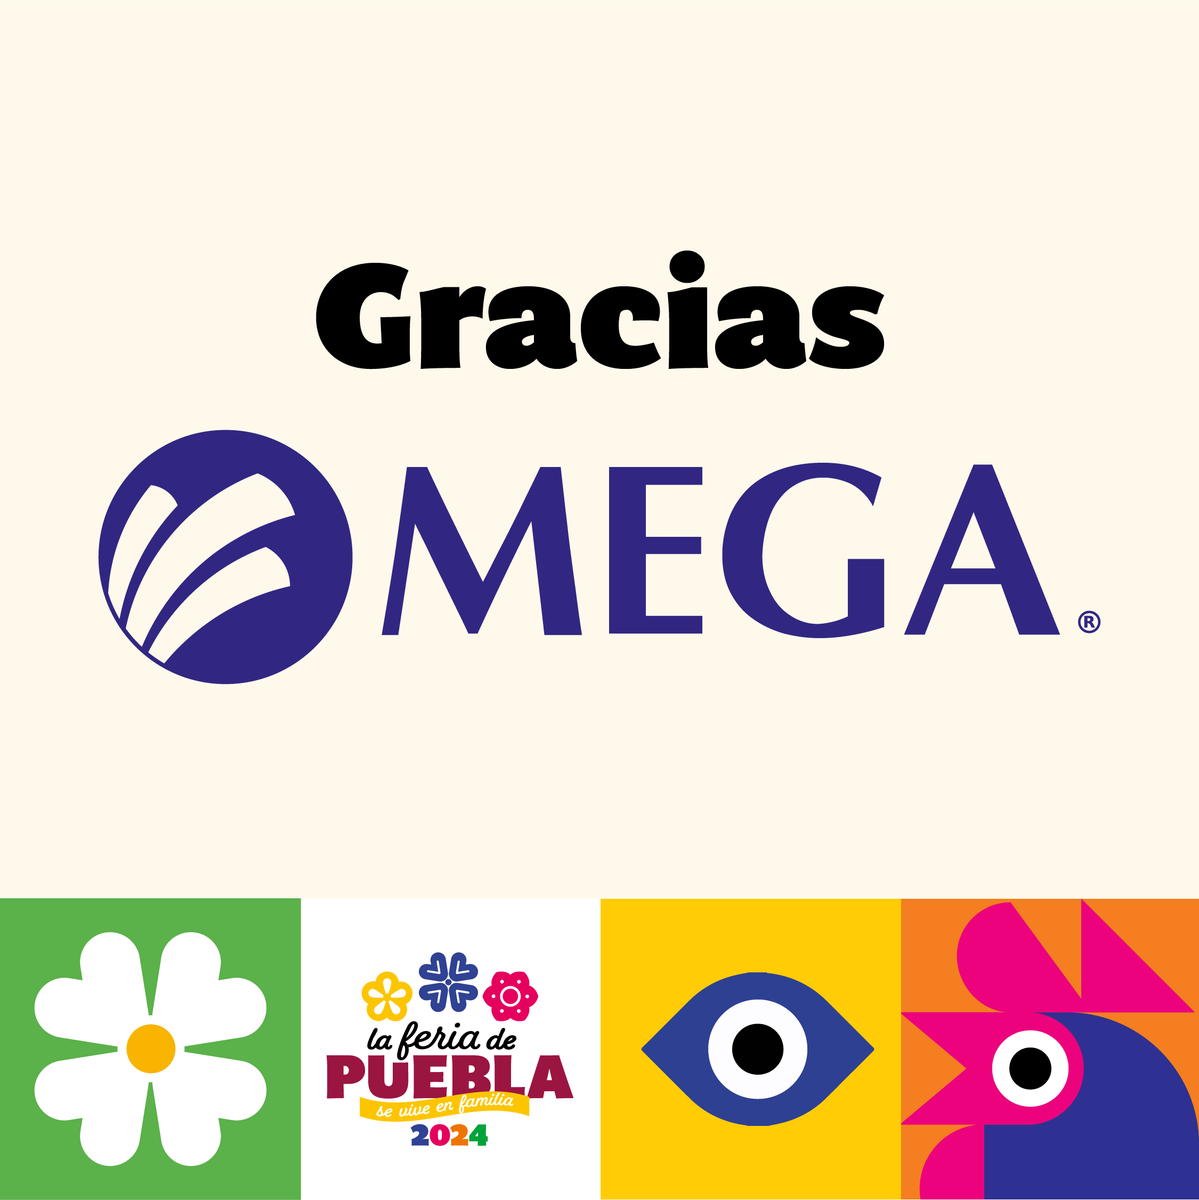 😁 Gracias Mega, por ser patrocinador oficial de la Feria de Puebla 2024. 🌐 ¡Juntos conectamos grandes experiencias! 😎 #FeriadePuebla2024